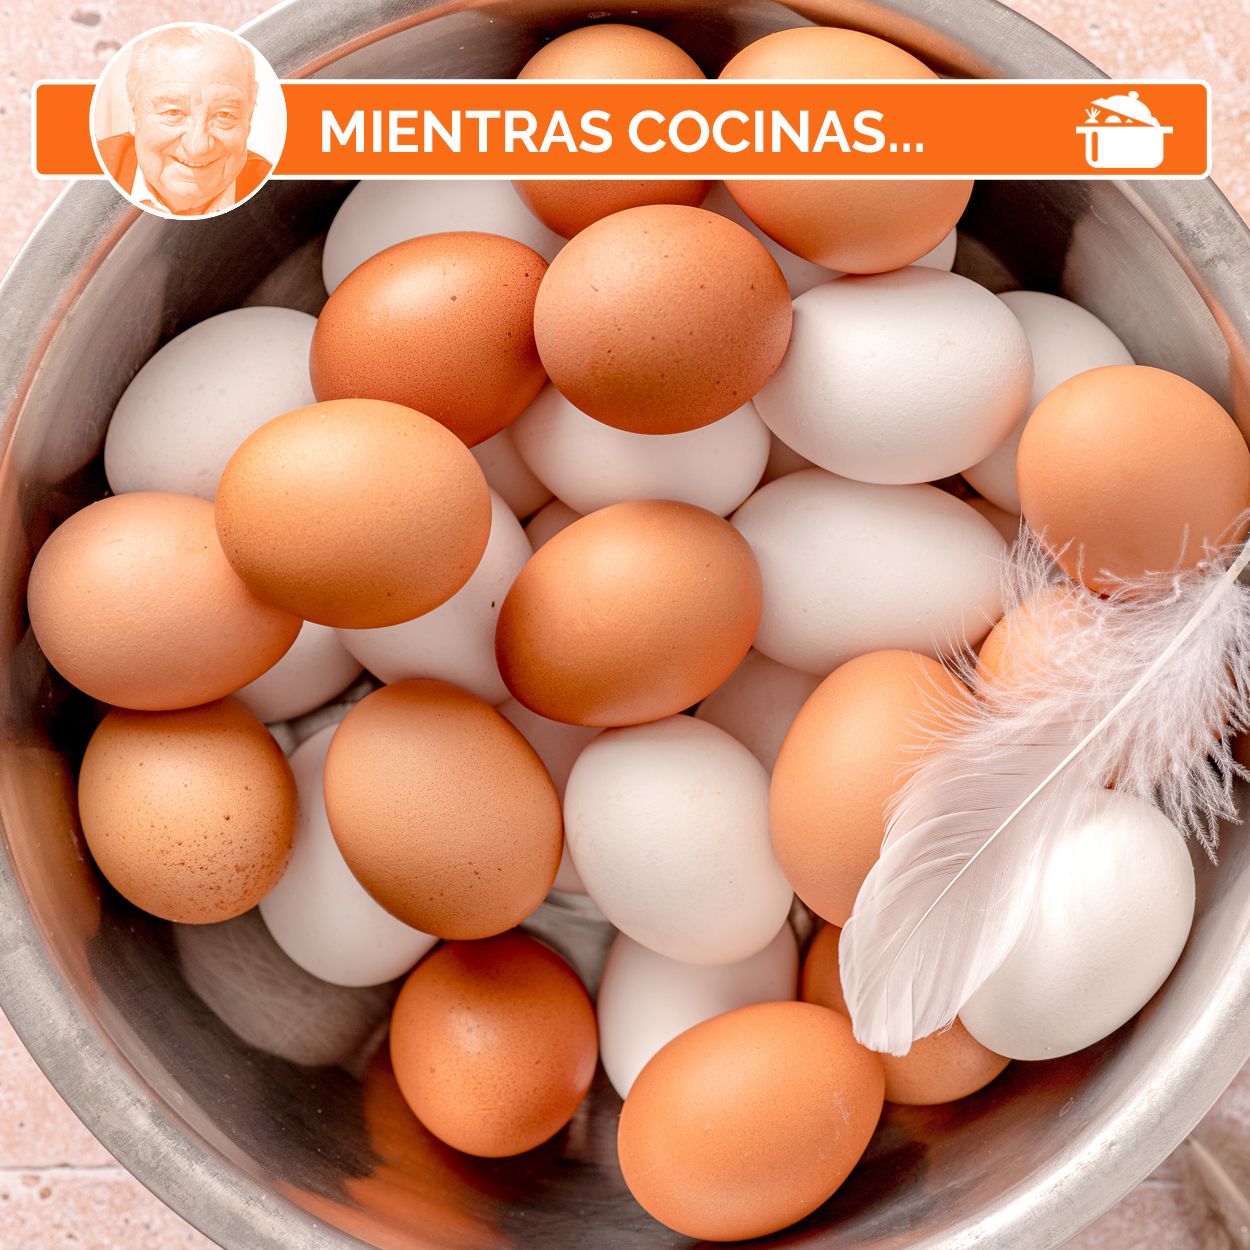 Huevos: ¿qué indica el color de la cáscara?, ¿cómo saber si están frescos?